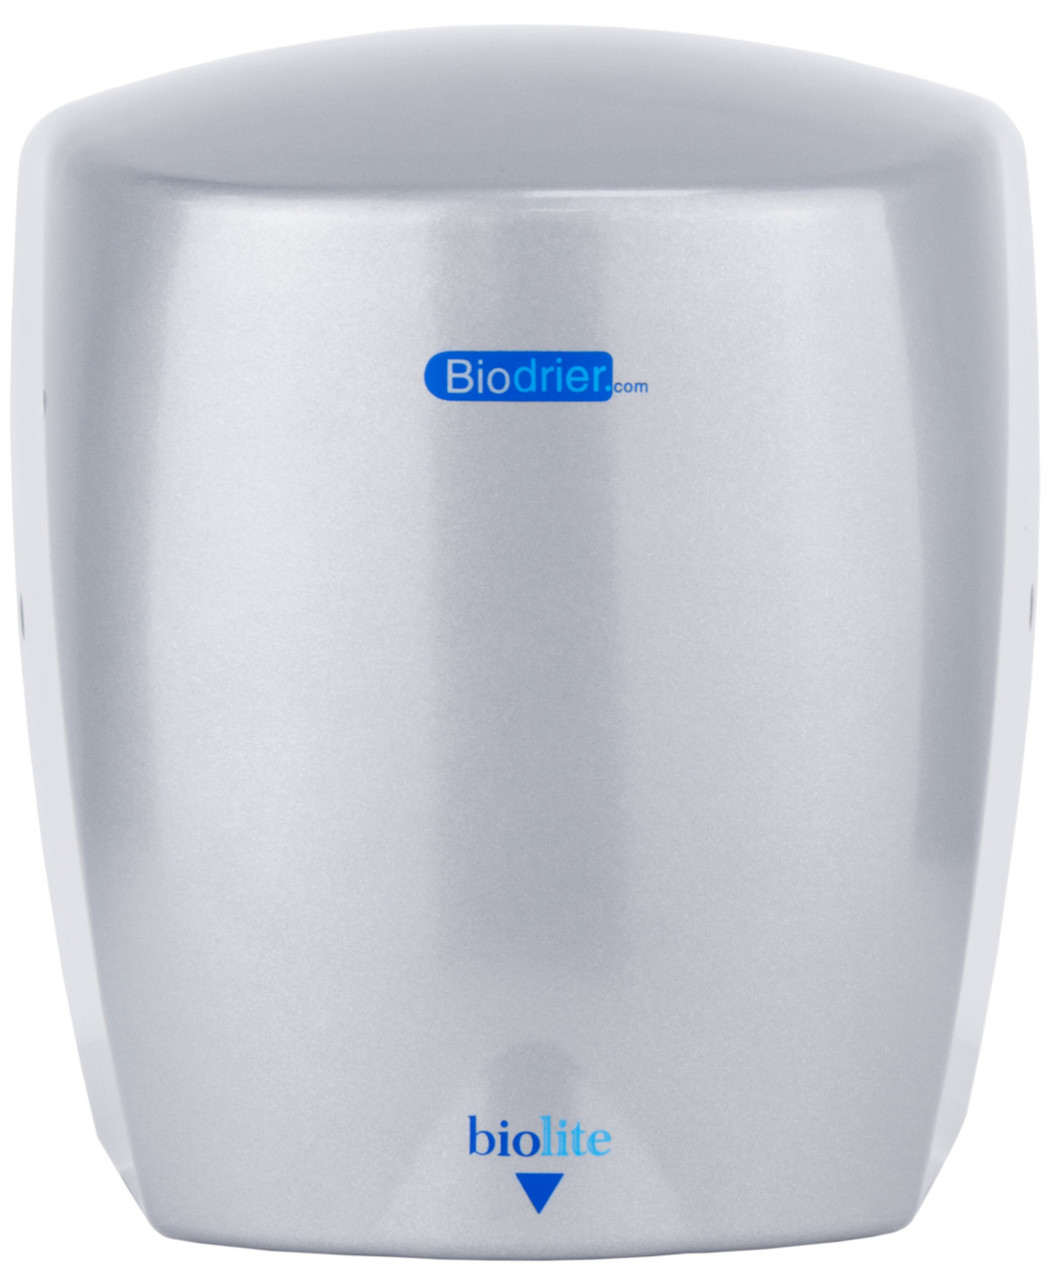 HD-BL09S - Biodrier Biolite Hand Dryer - Silver - Front